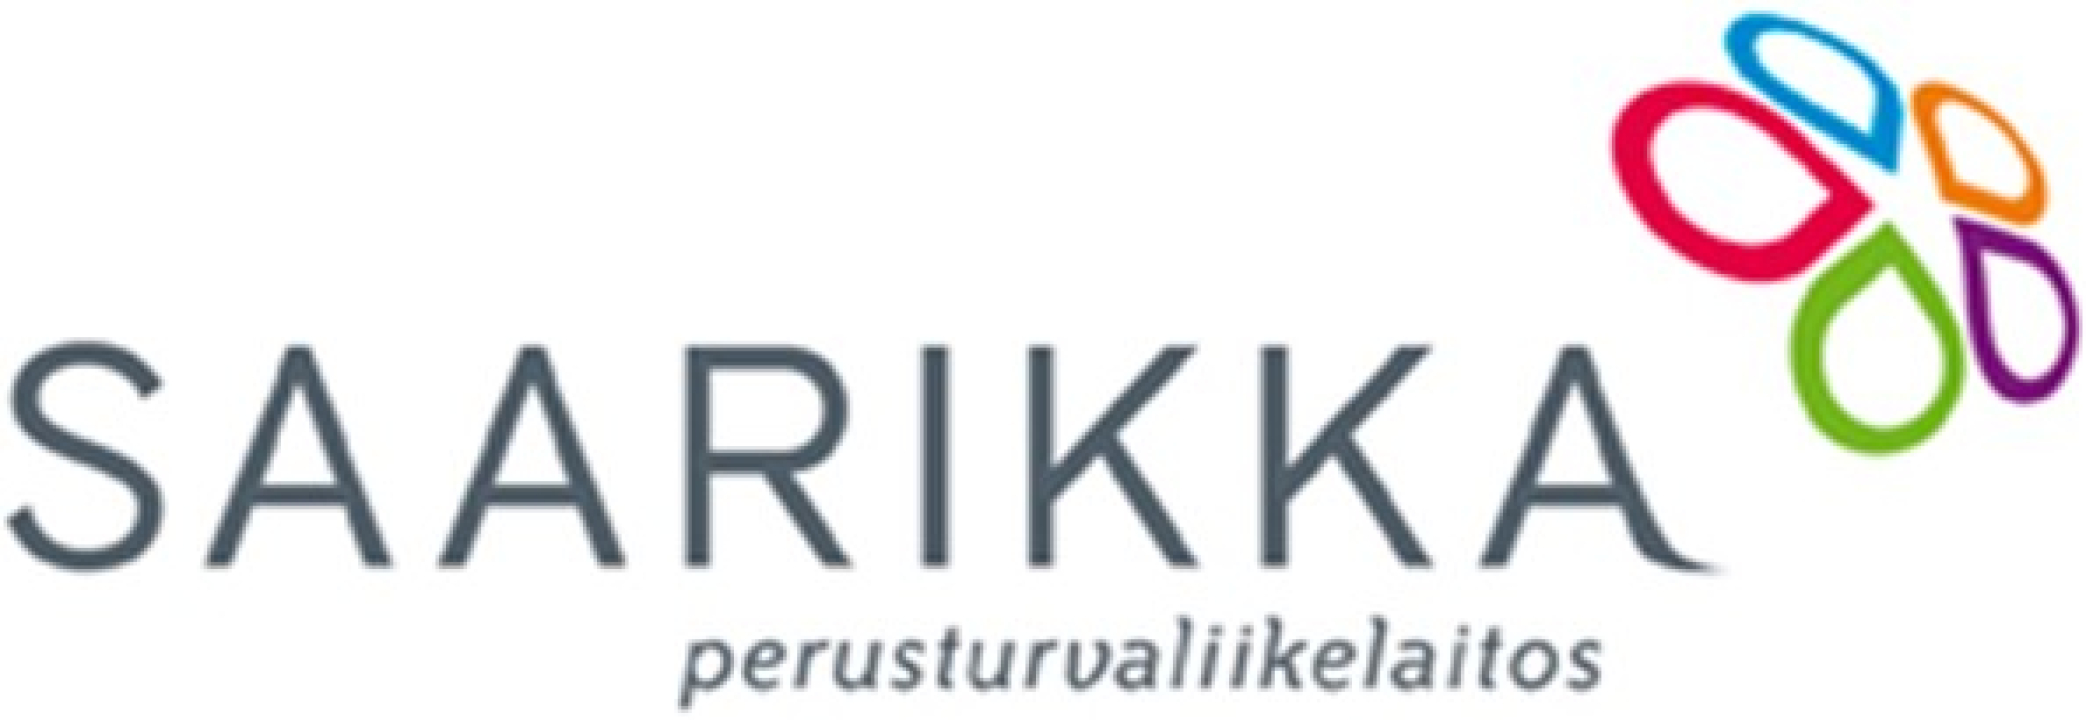 Saarikka kuntayhtymän logo.